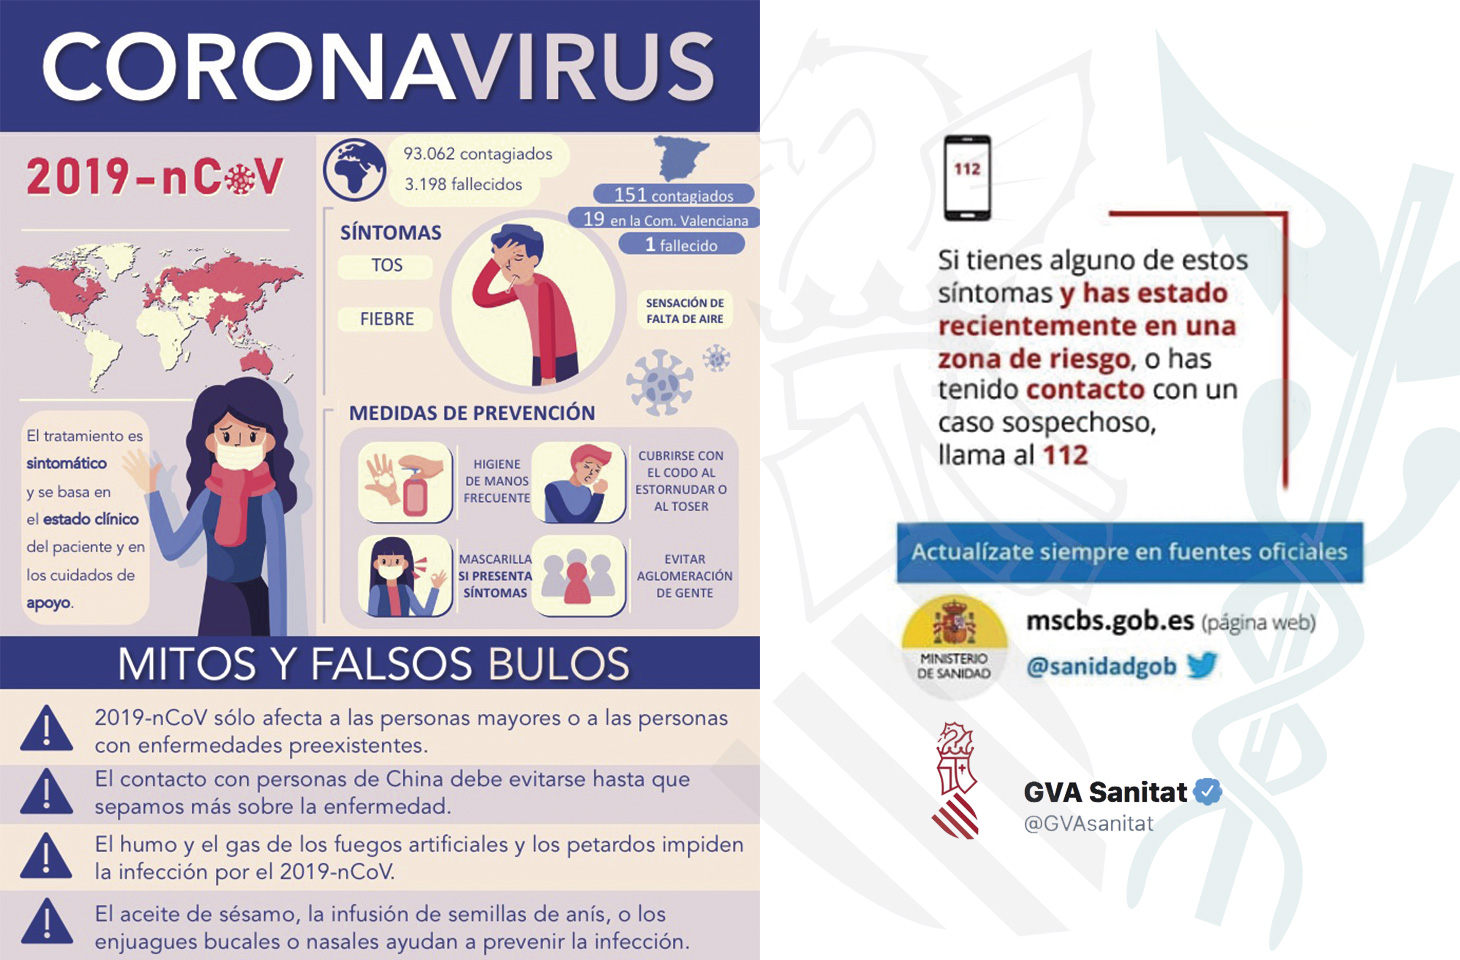 Los sanitarios piden a la población tranquilidad frente a la alarma del Coronavirus COVID-19